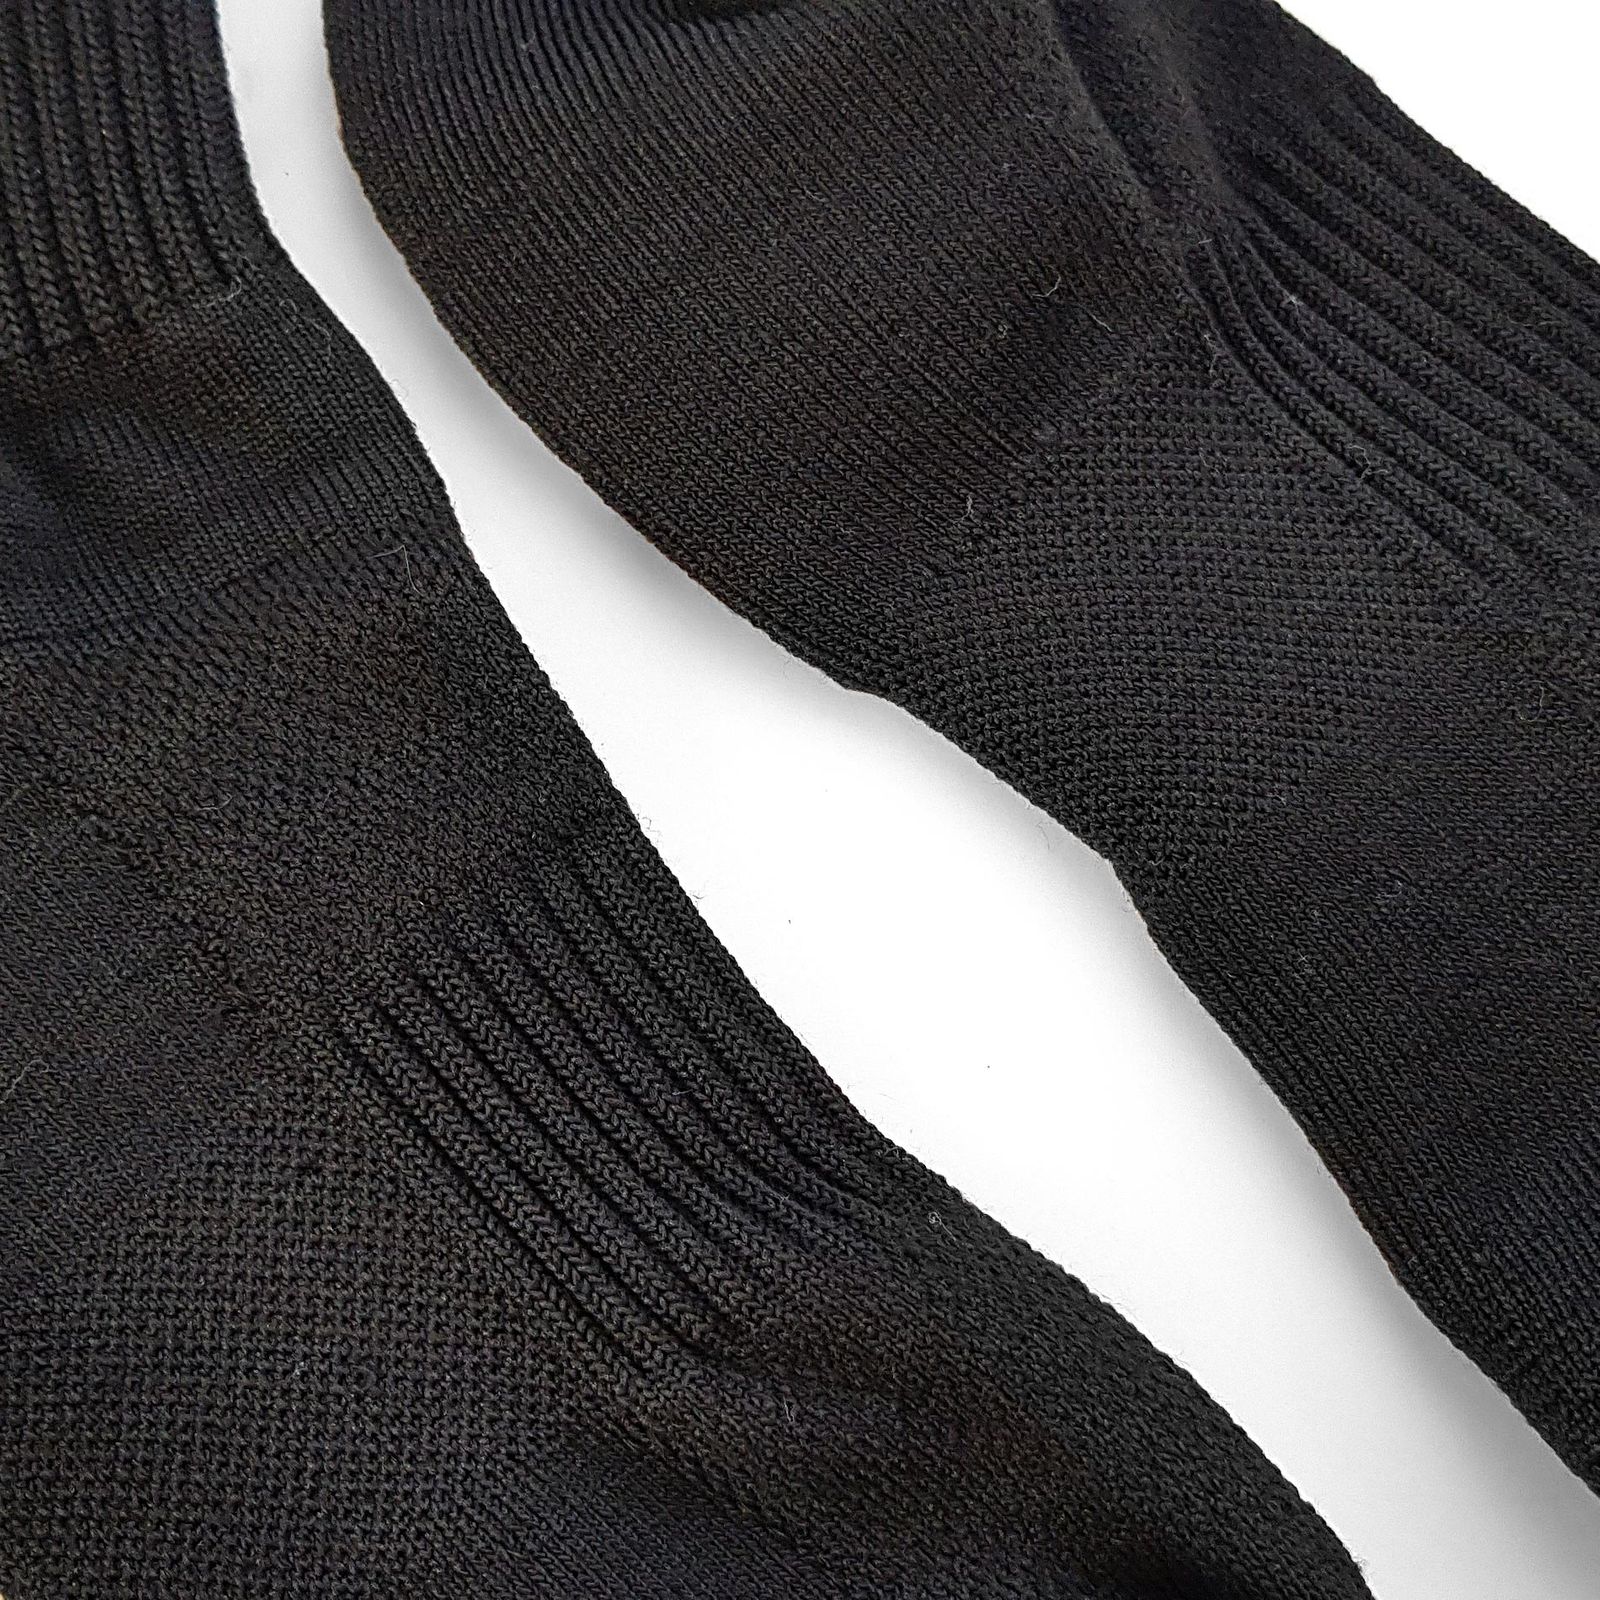 جوراب ورزشی زنانه ماییلدا مدل حوله ای کد 4186 رنگ مشکی -  - 4